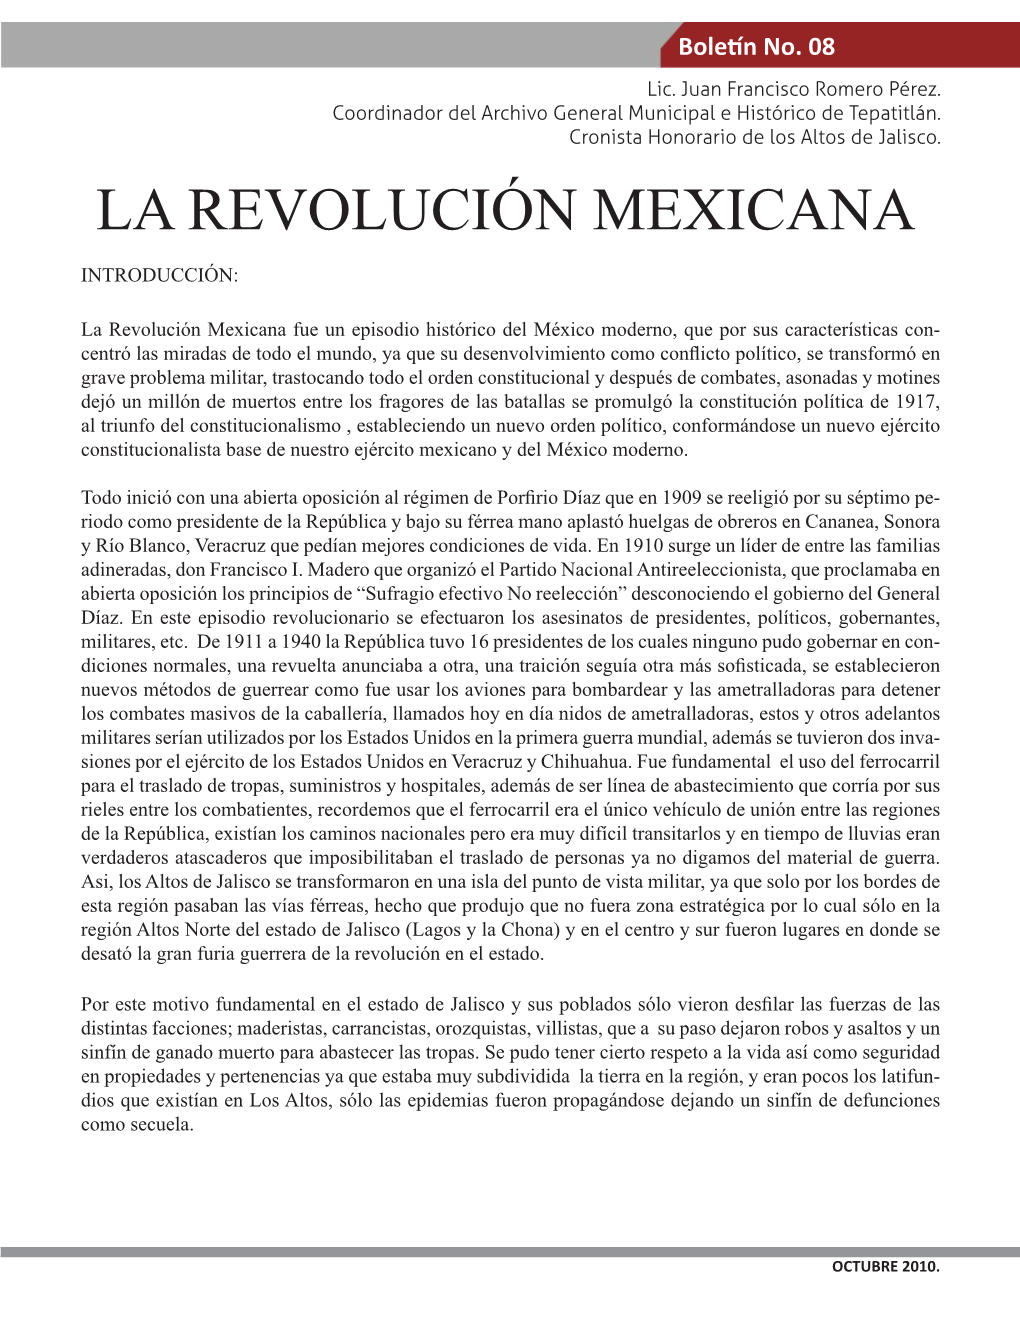 La Revolución Mexicana Introducción